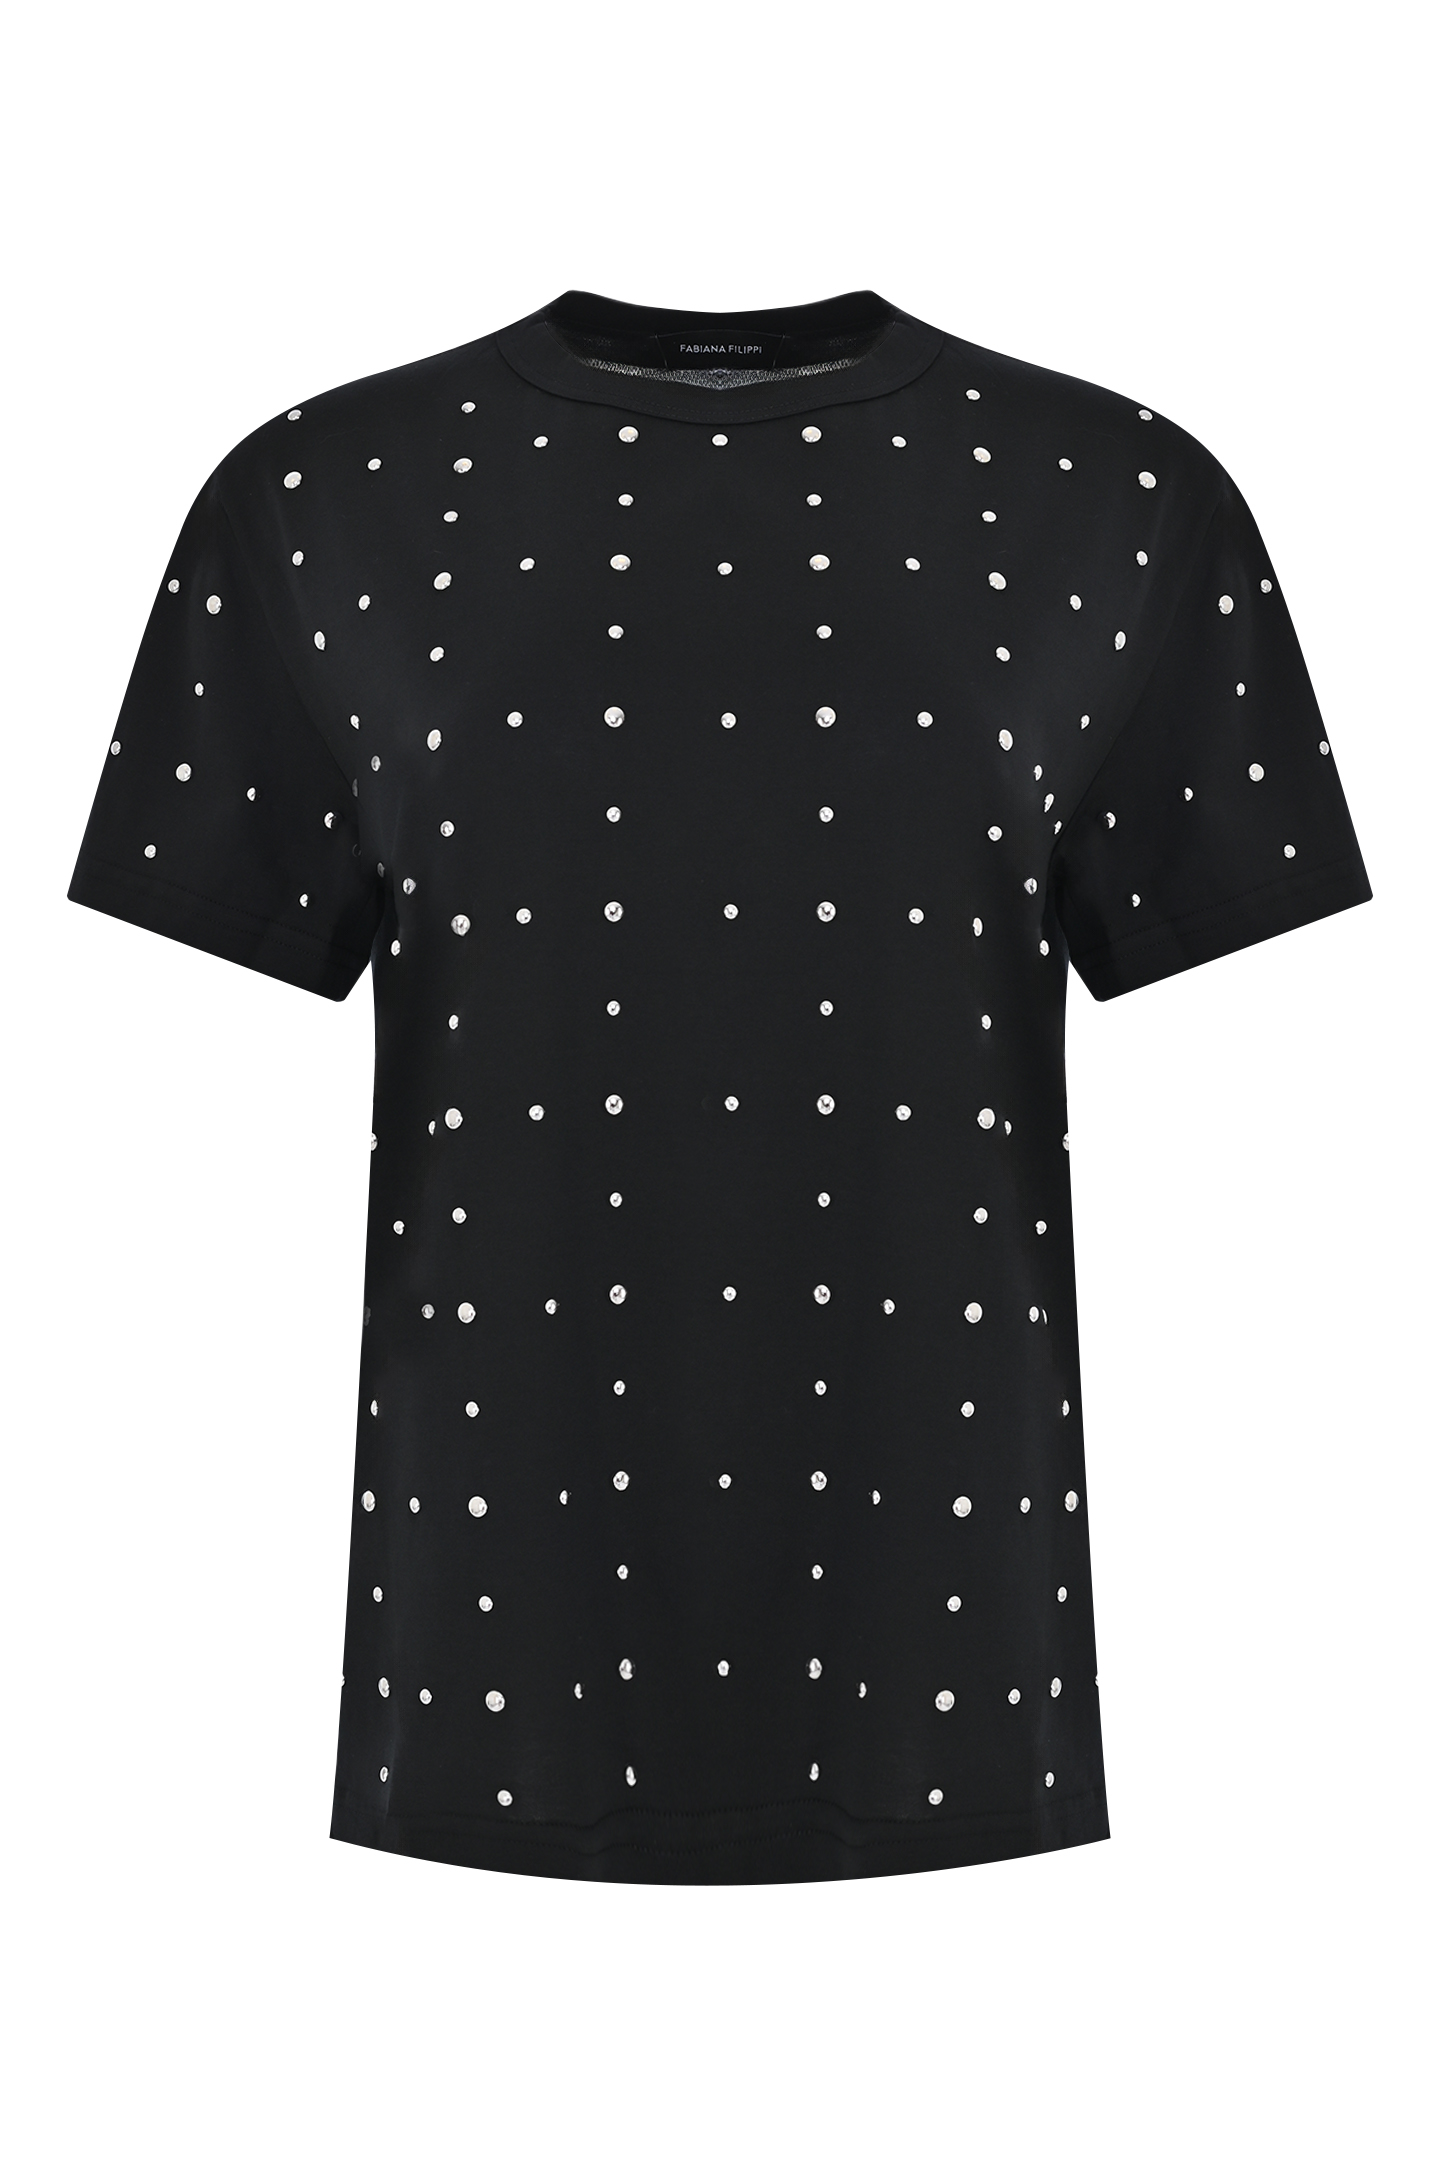 Хлоковая футболка со стразами FABIANA FILIPPI JED274F445H484, цвет: Черный, Женский